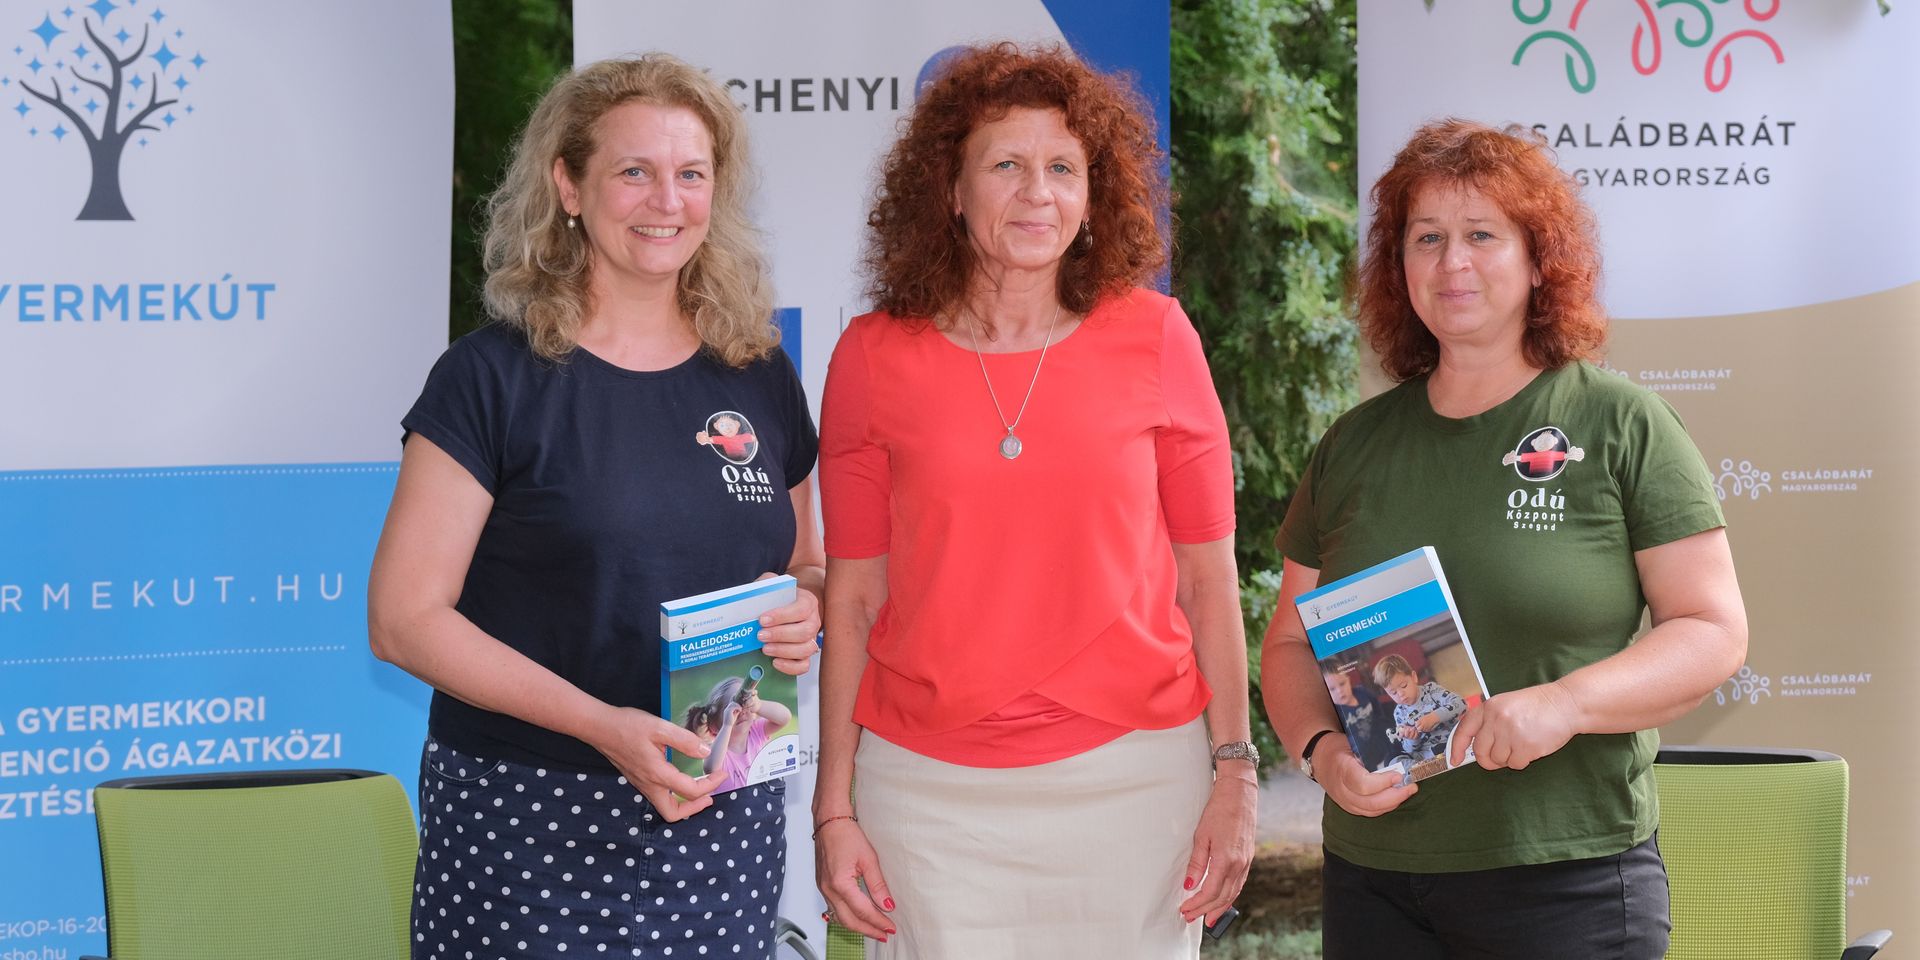 Kicsiben nagyok vagyunk! - szakkönyvekkel erősítik Szegeden az Odú Központ fejlesztőpedagógia munkáját